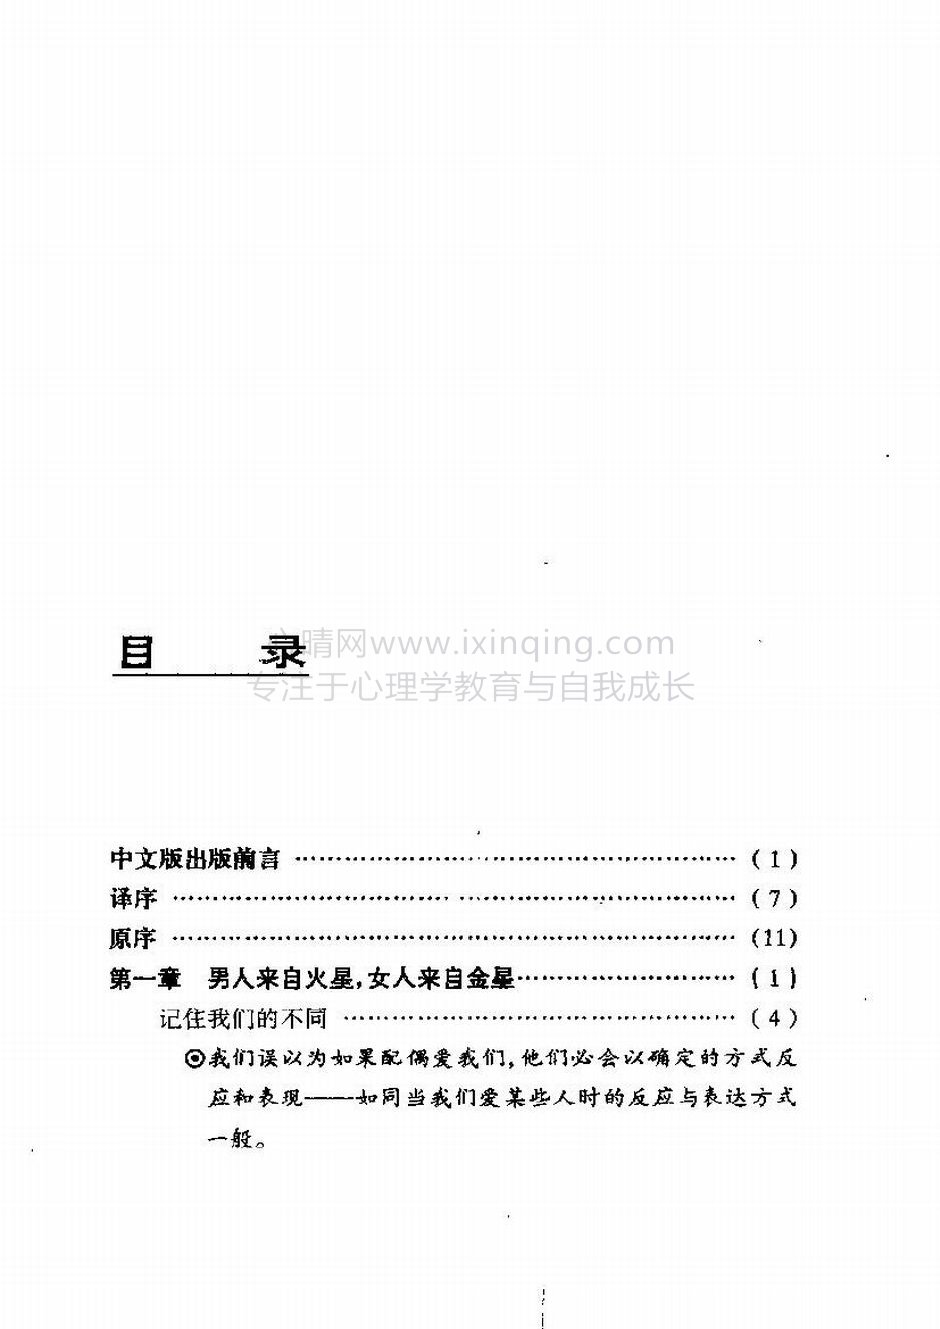 封面、原序、译序、中文版出版前言(20)